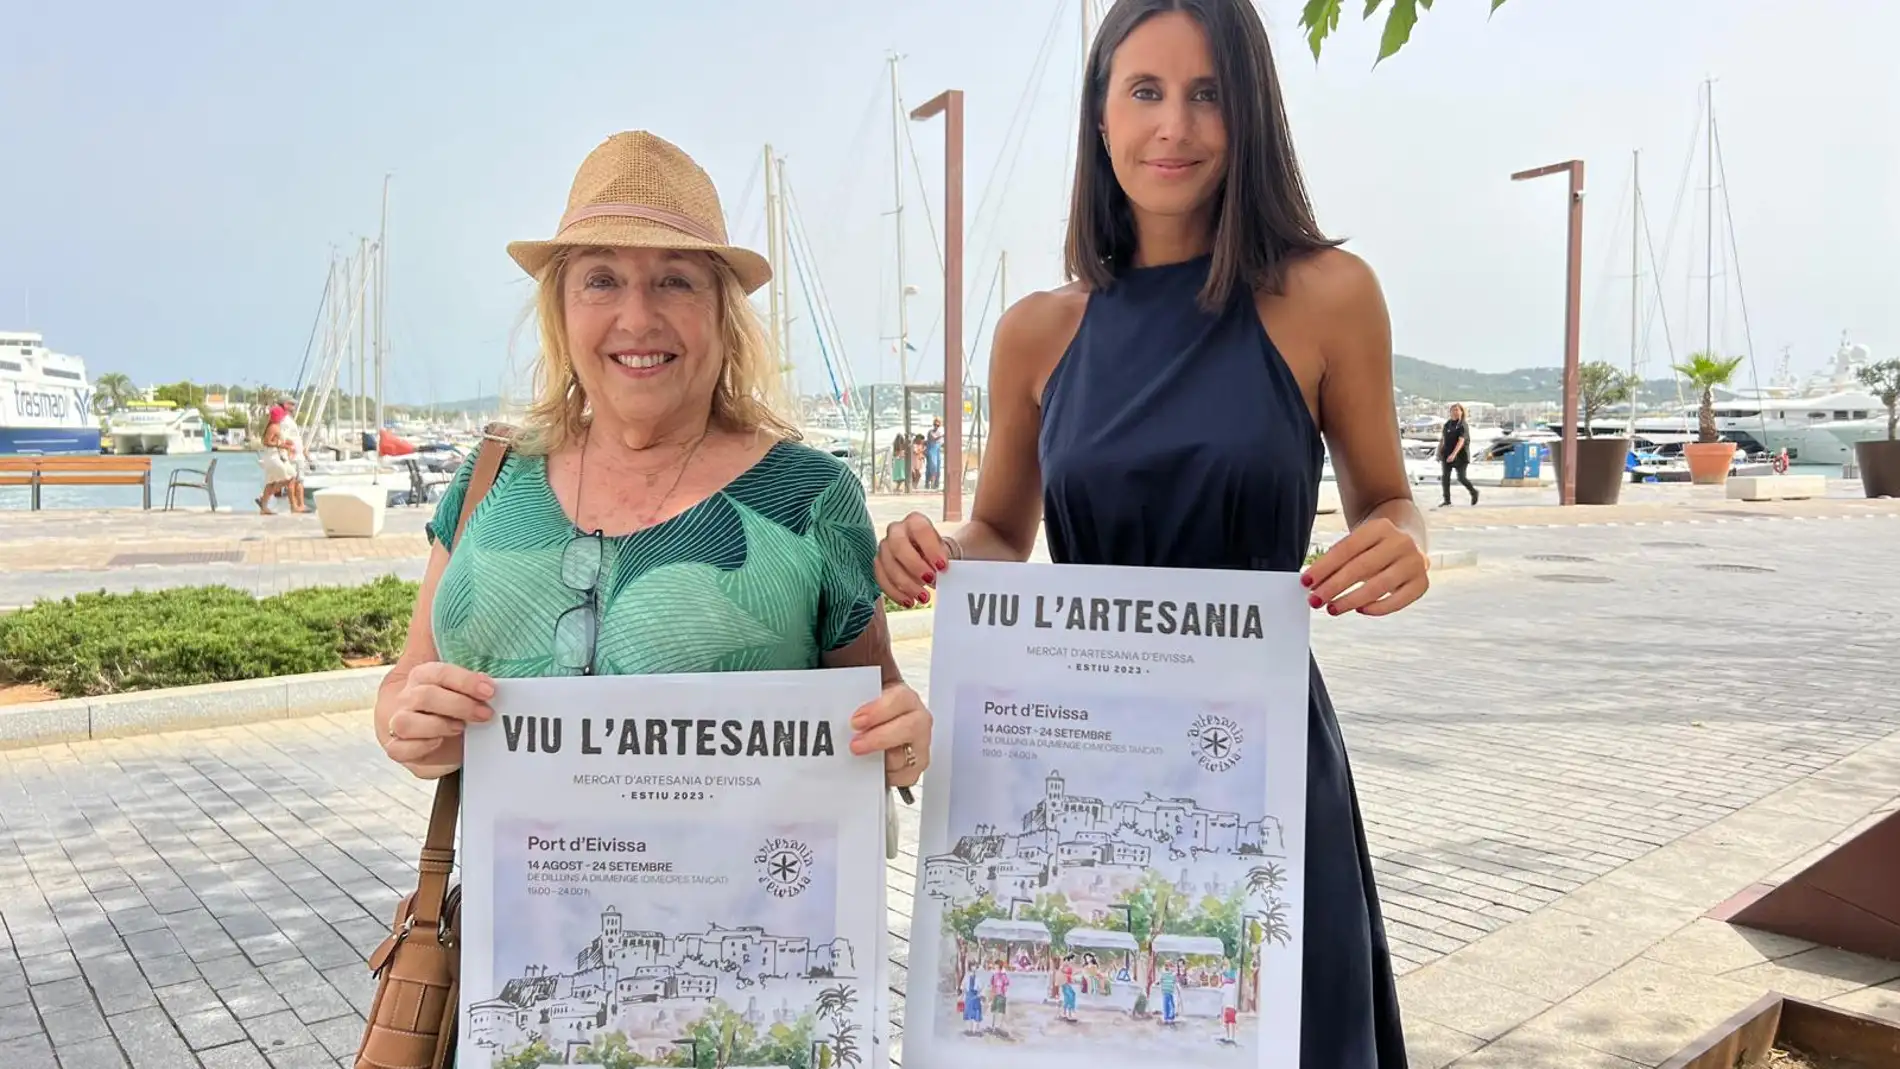 Vuelve el mercado 'Vive la artesanía' en el Puerto de Eivissa con 20 artesanos